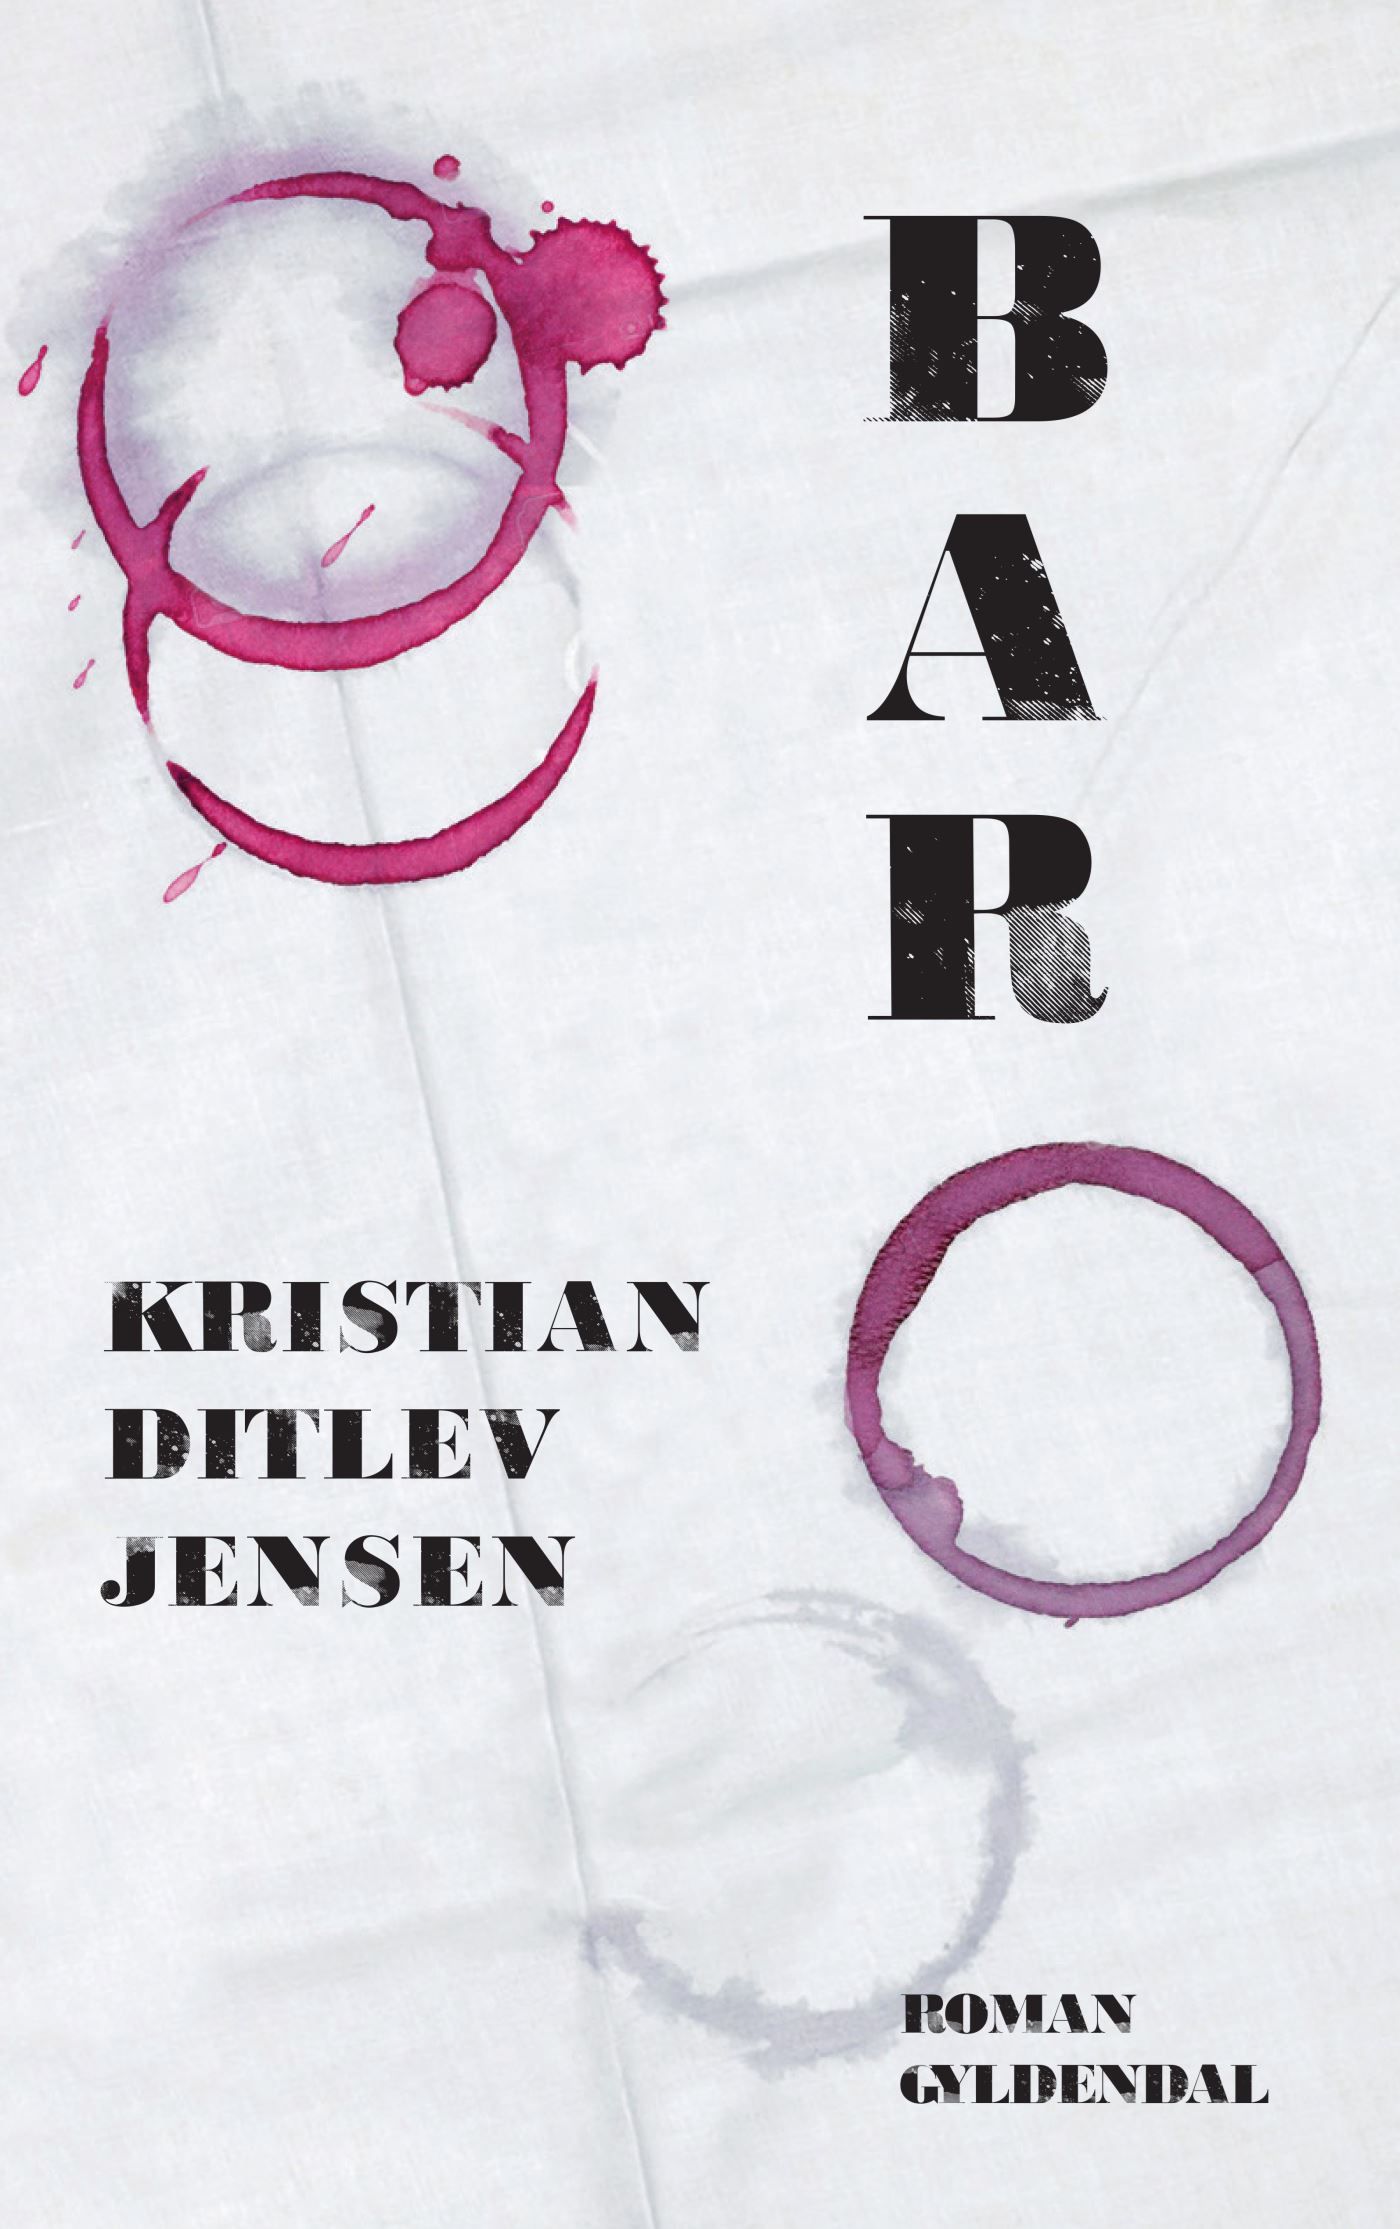 Bar, lydbog af Kristian Ditlev Jensen